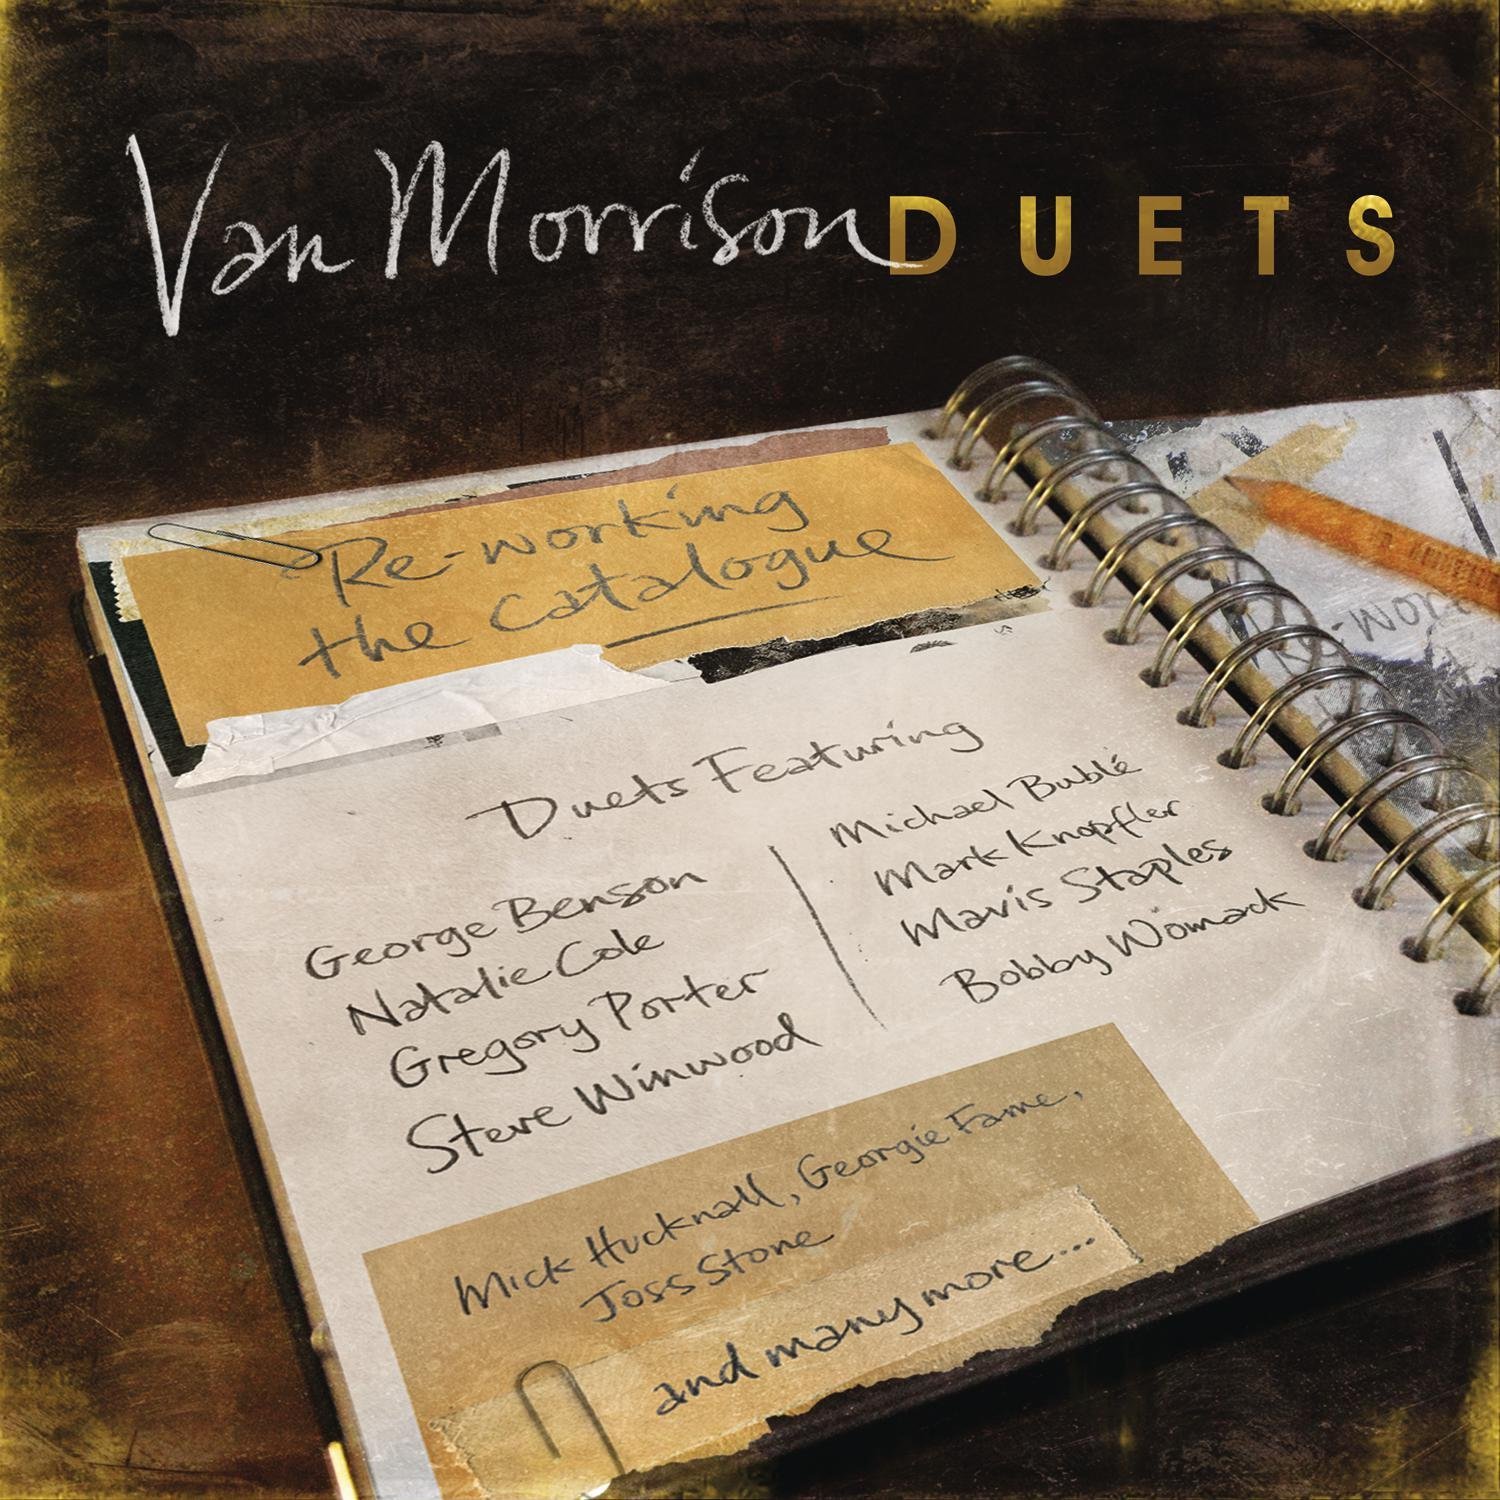 Estrenamos 'Duets', el nuevo disco de Van Morrison